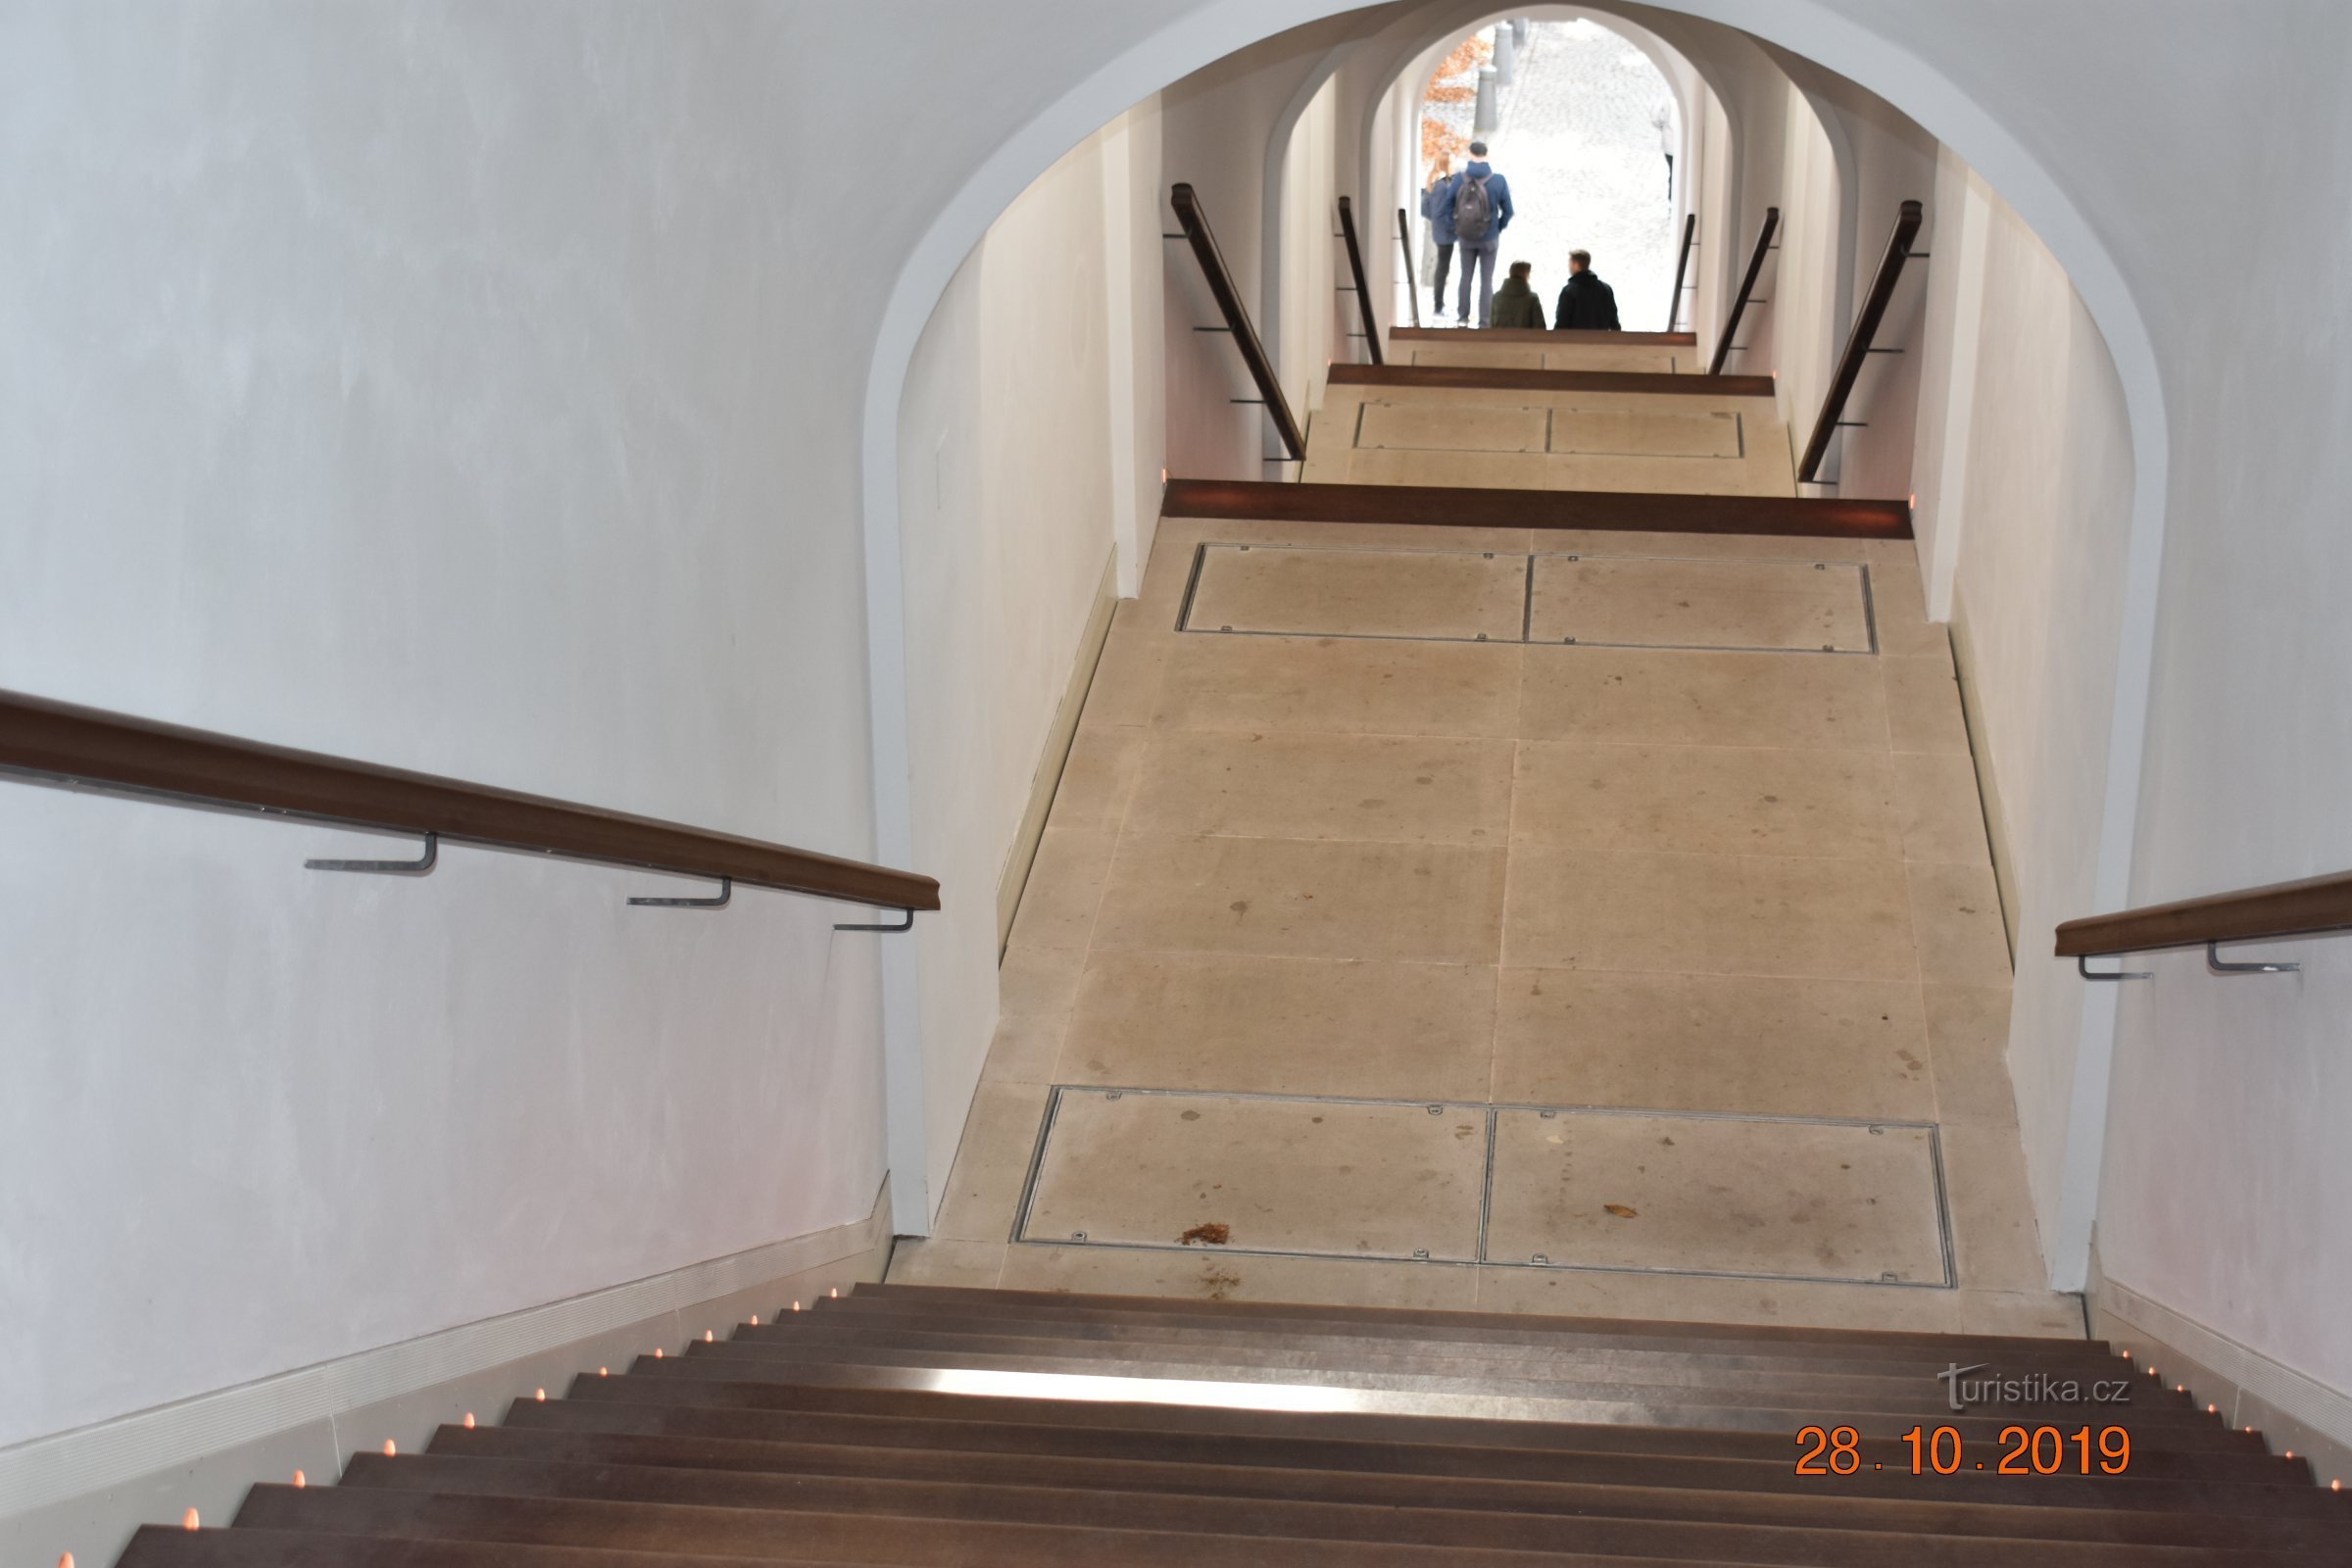 Bono publico lépcsőház Hradec Králové-ban a 2019-es felújítás után